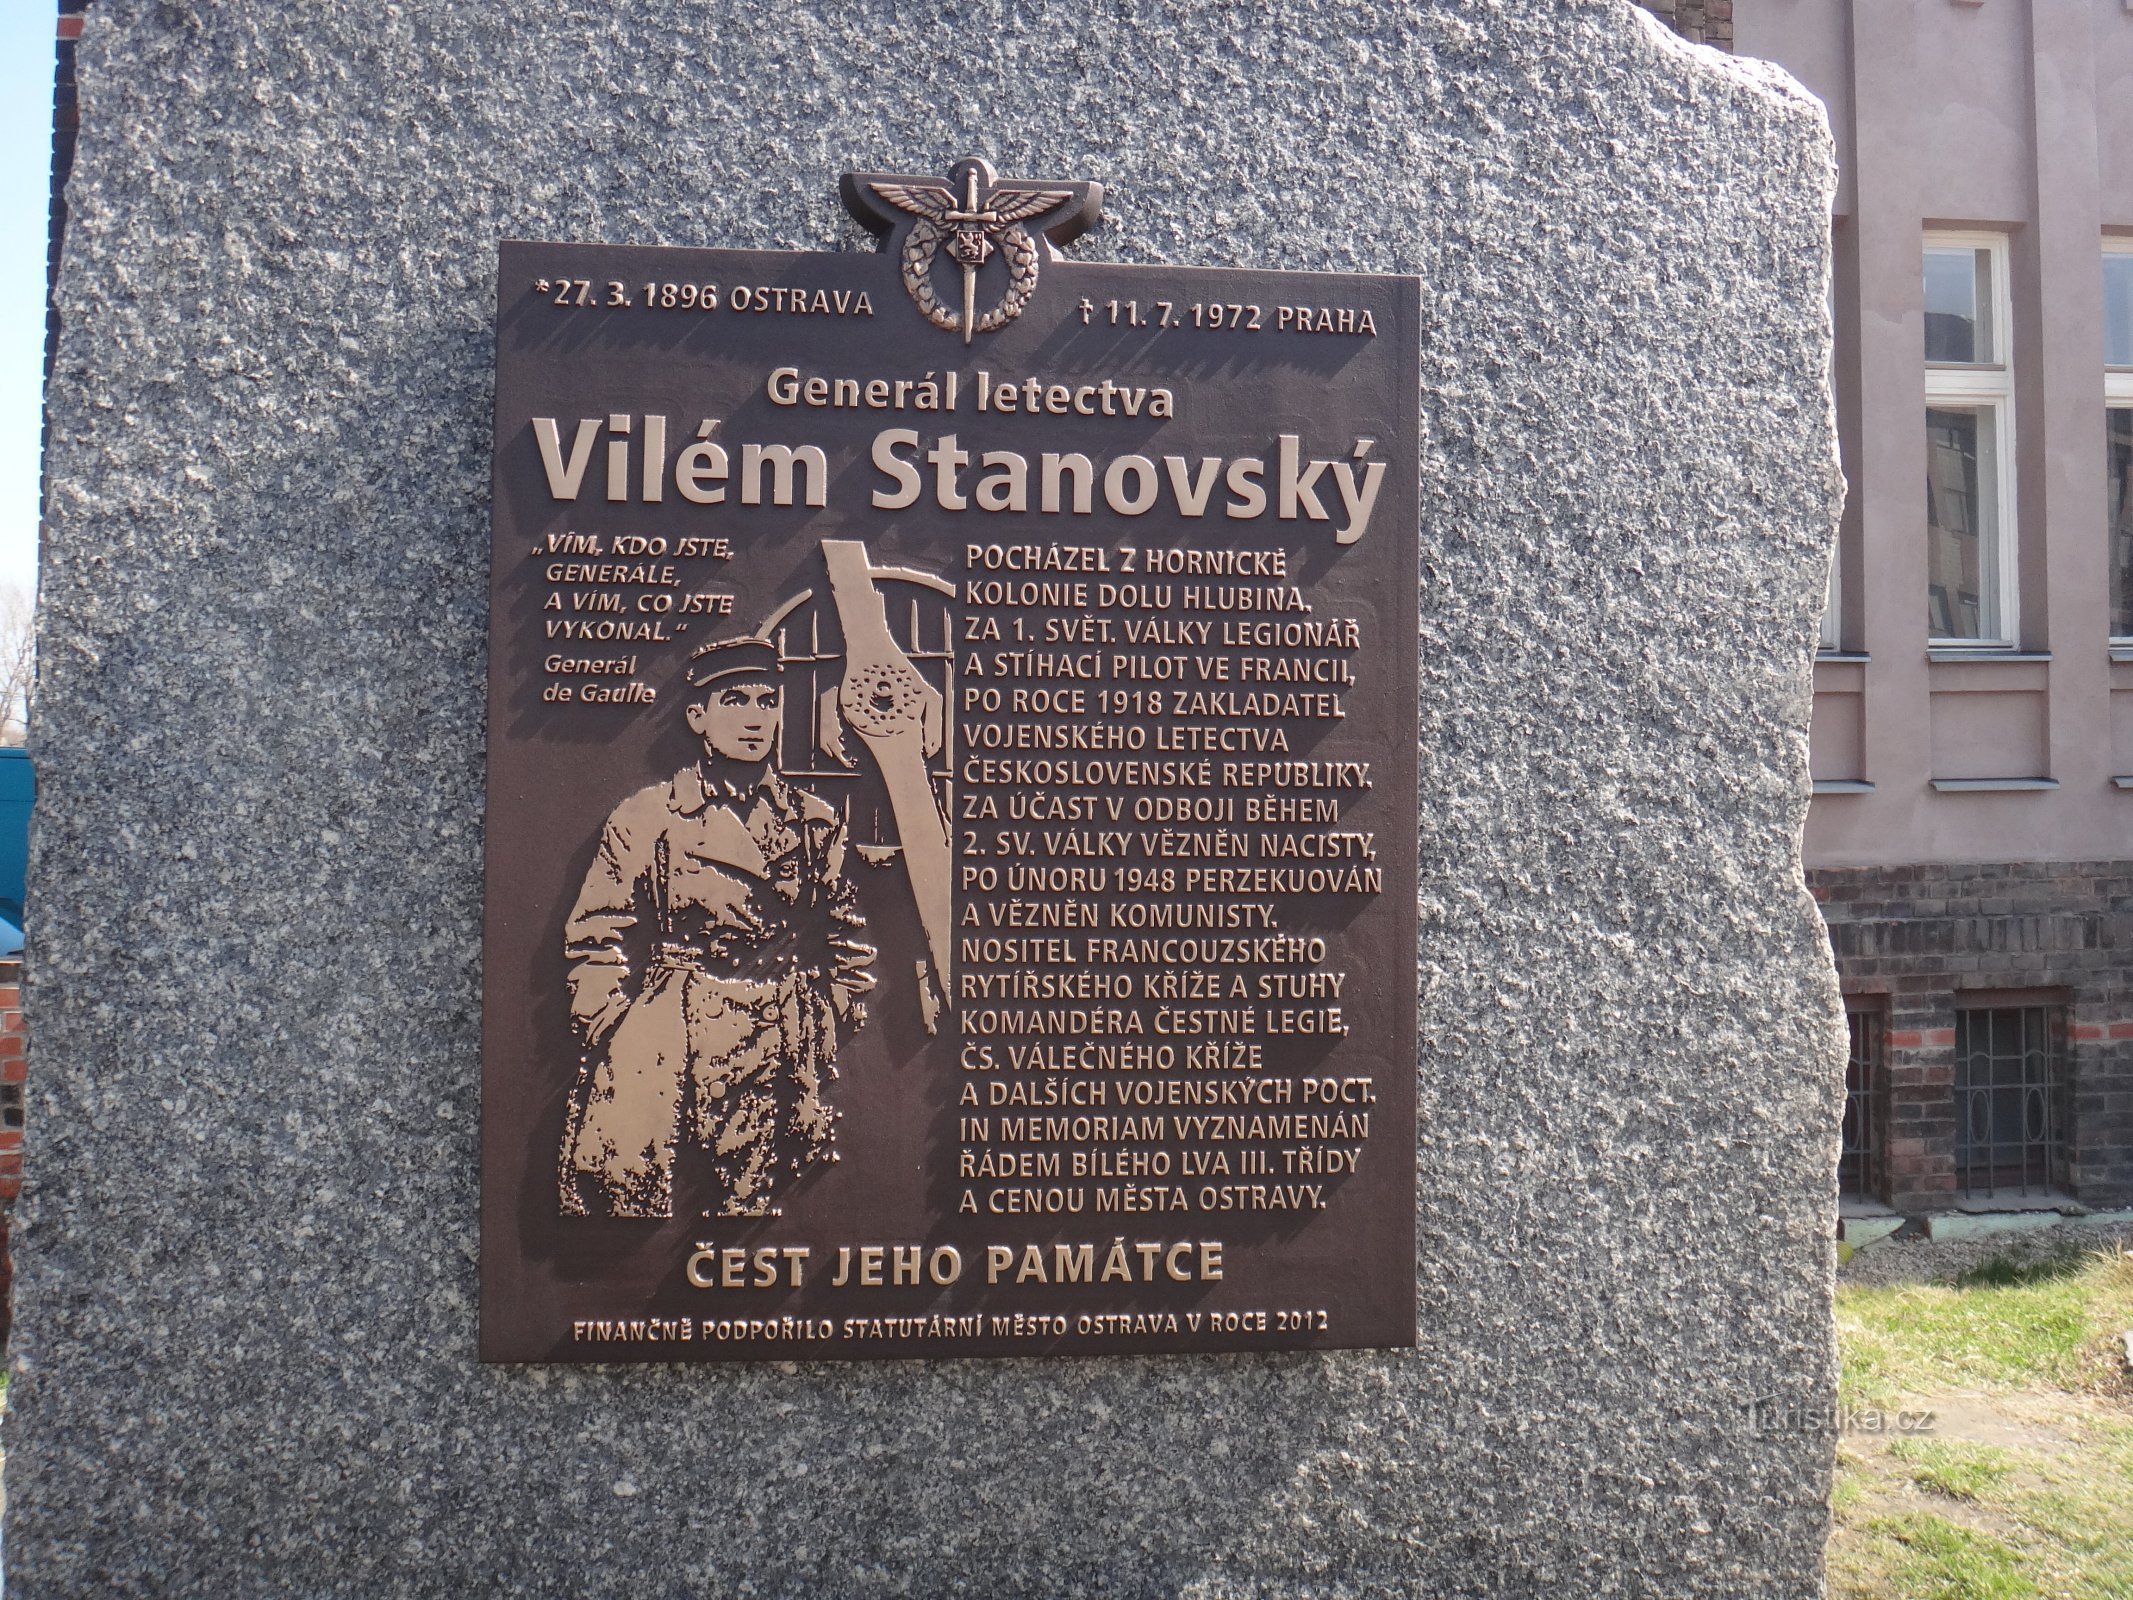 monument to Vilém Stanovský